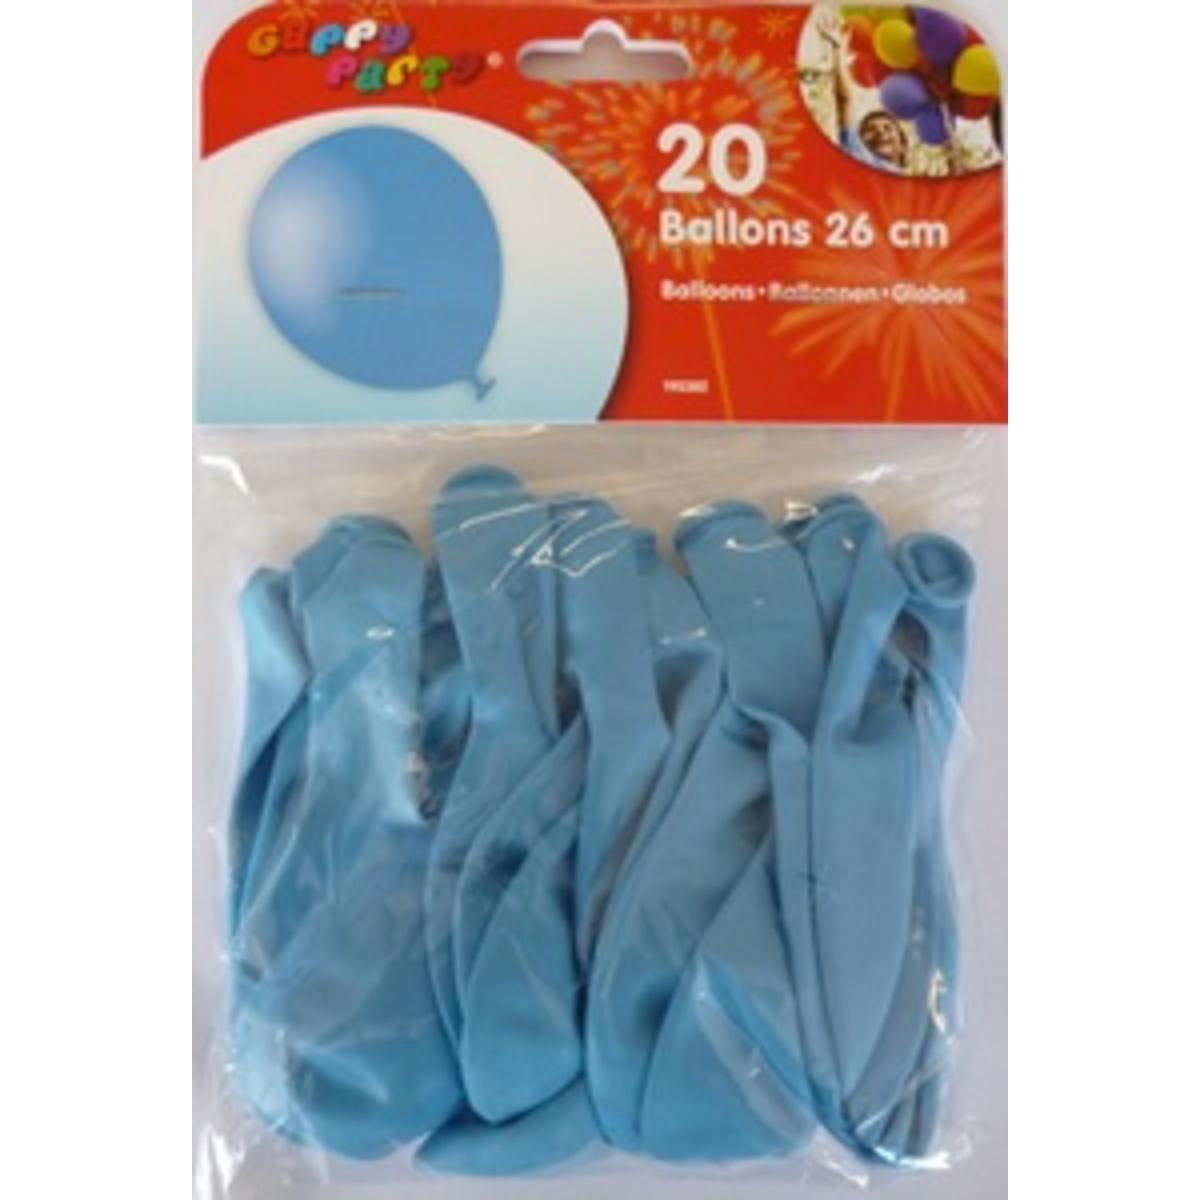 Ballons 25 cm lagonx 20 pièces Gappy party